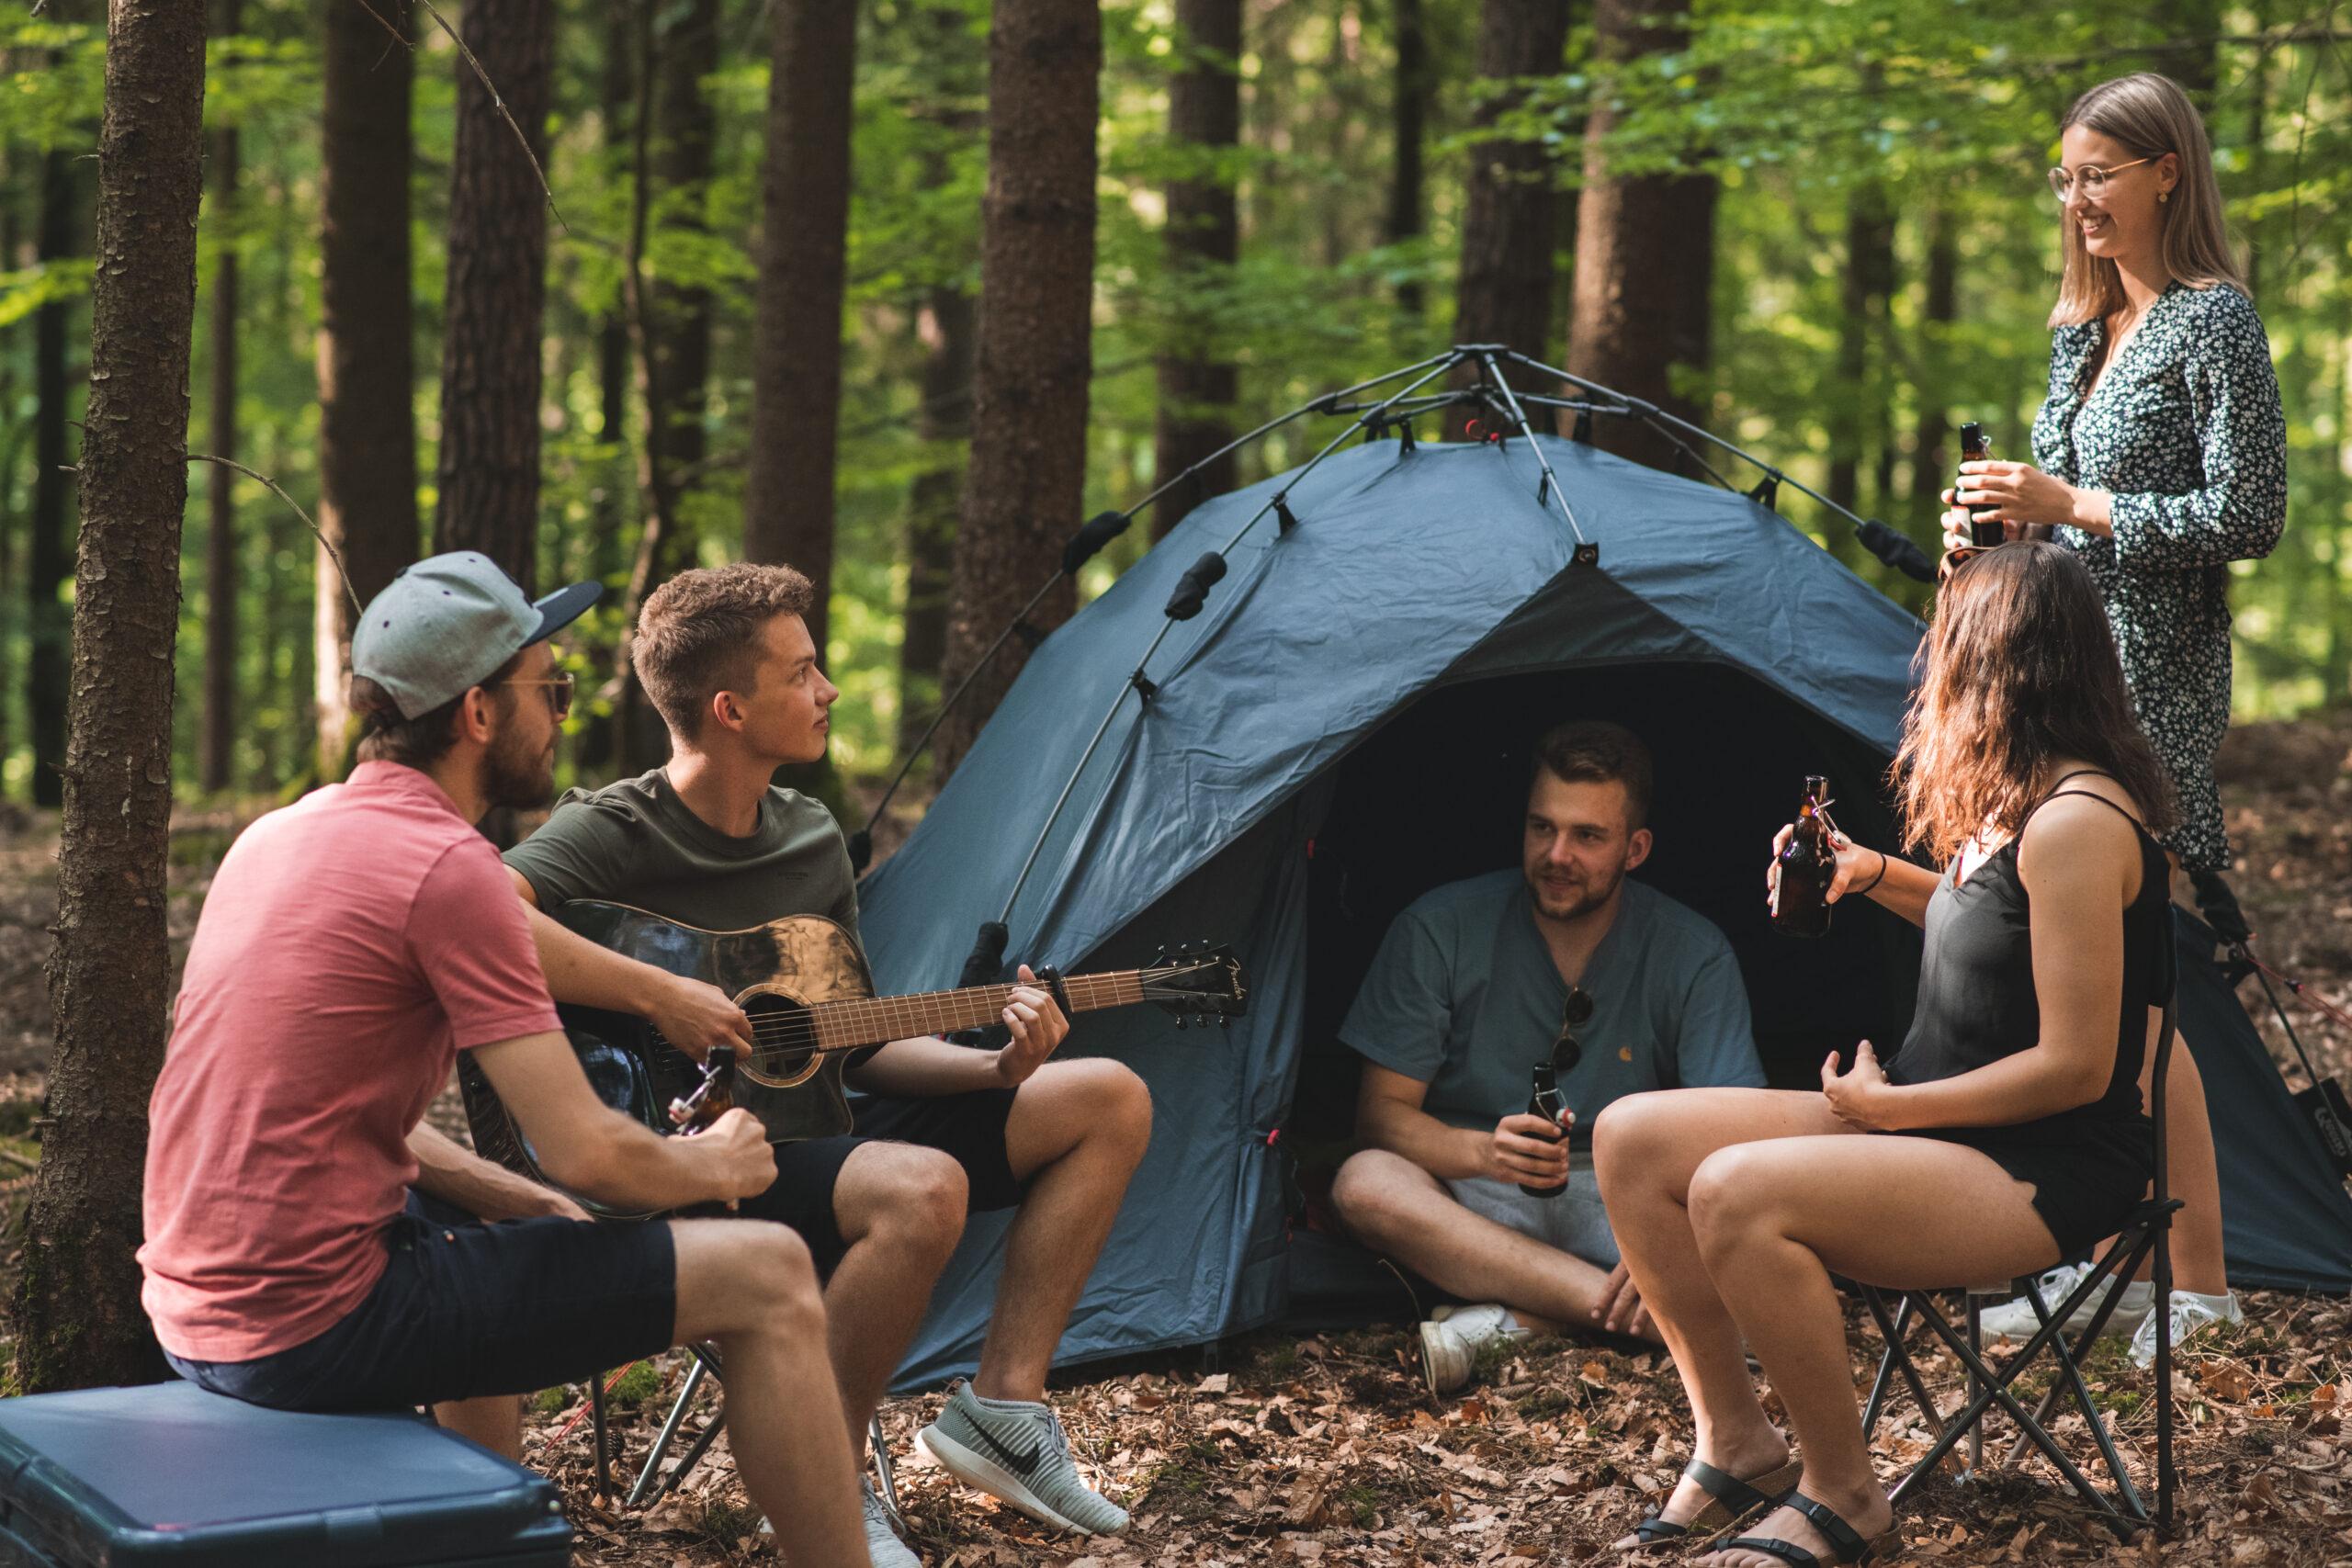 Festival-Camping mit Festivalzelt und passender Campingausrüstung mieten mit ilovegoa.de Festival Zelt Verleih